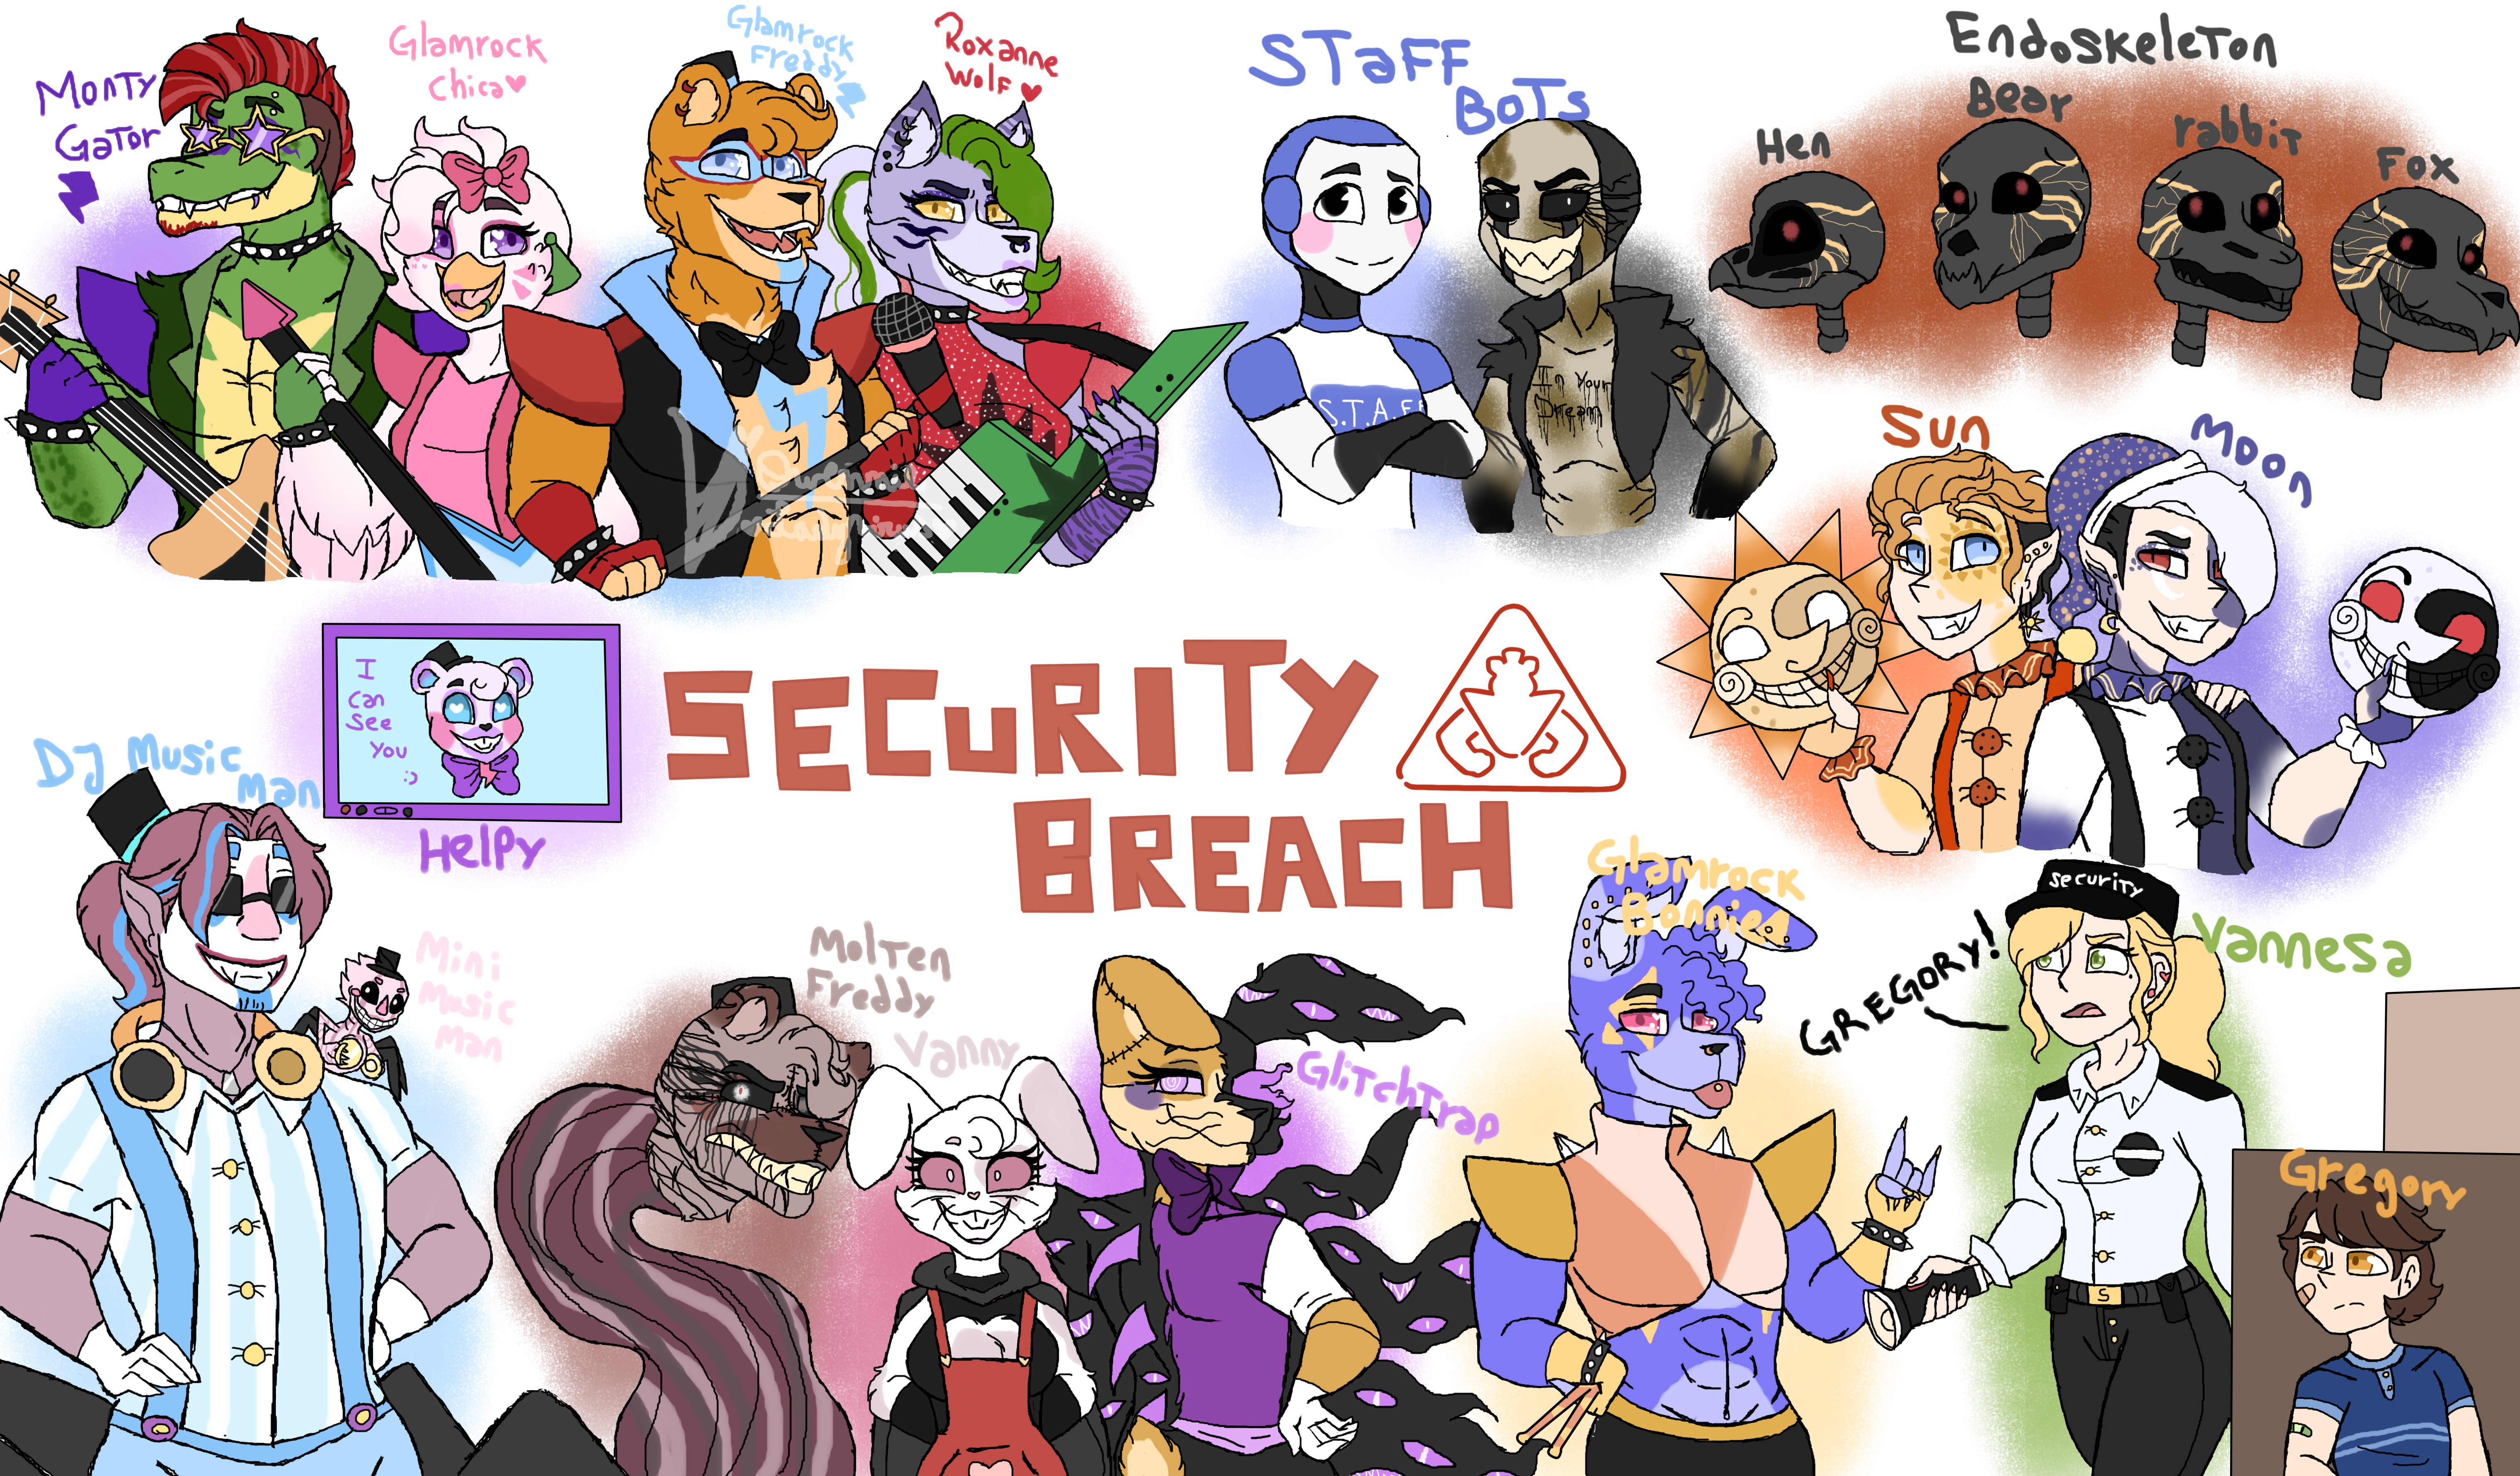 Todos los personajes animatrónicos de FNAF: Security Breach